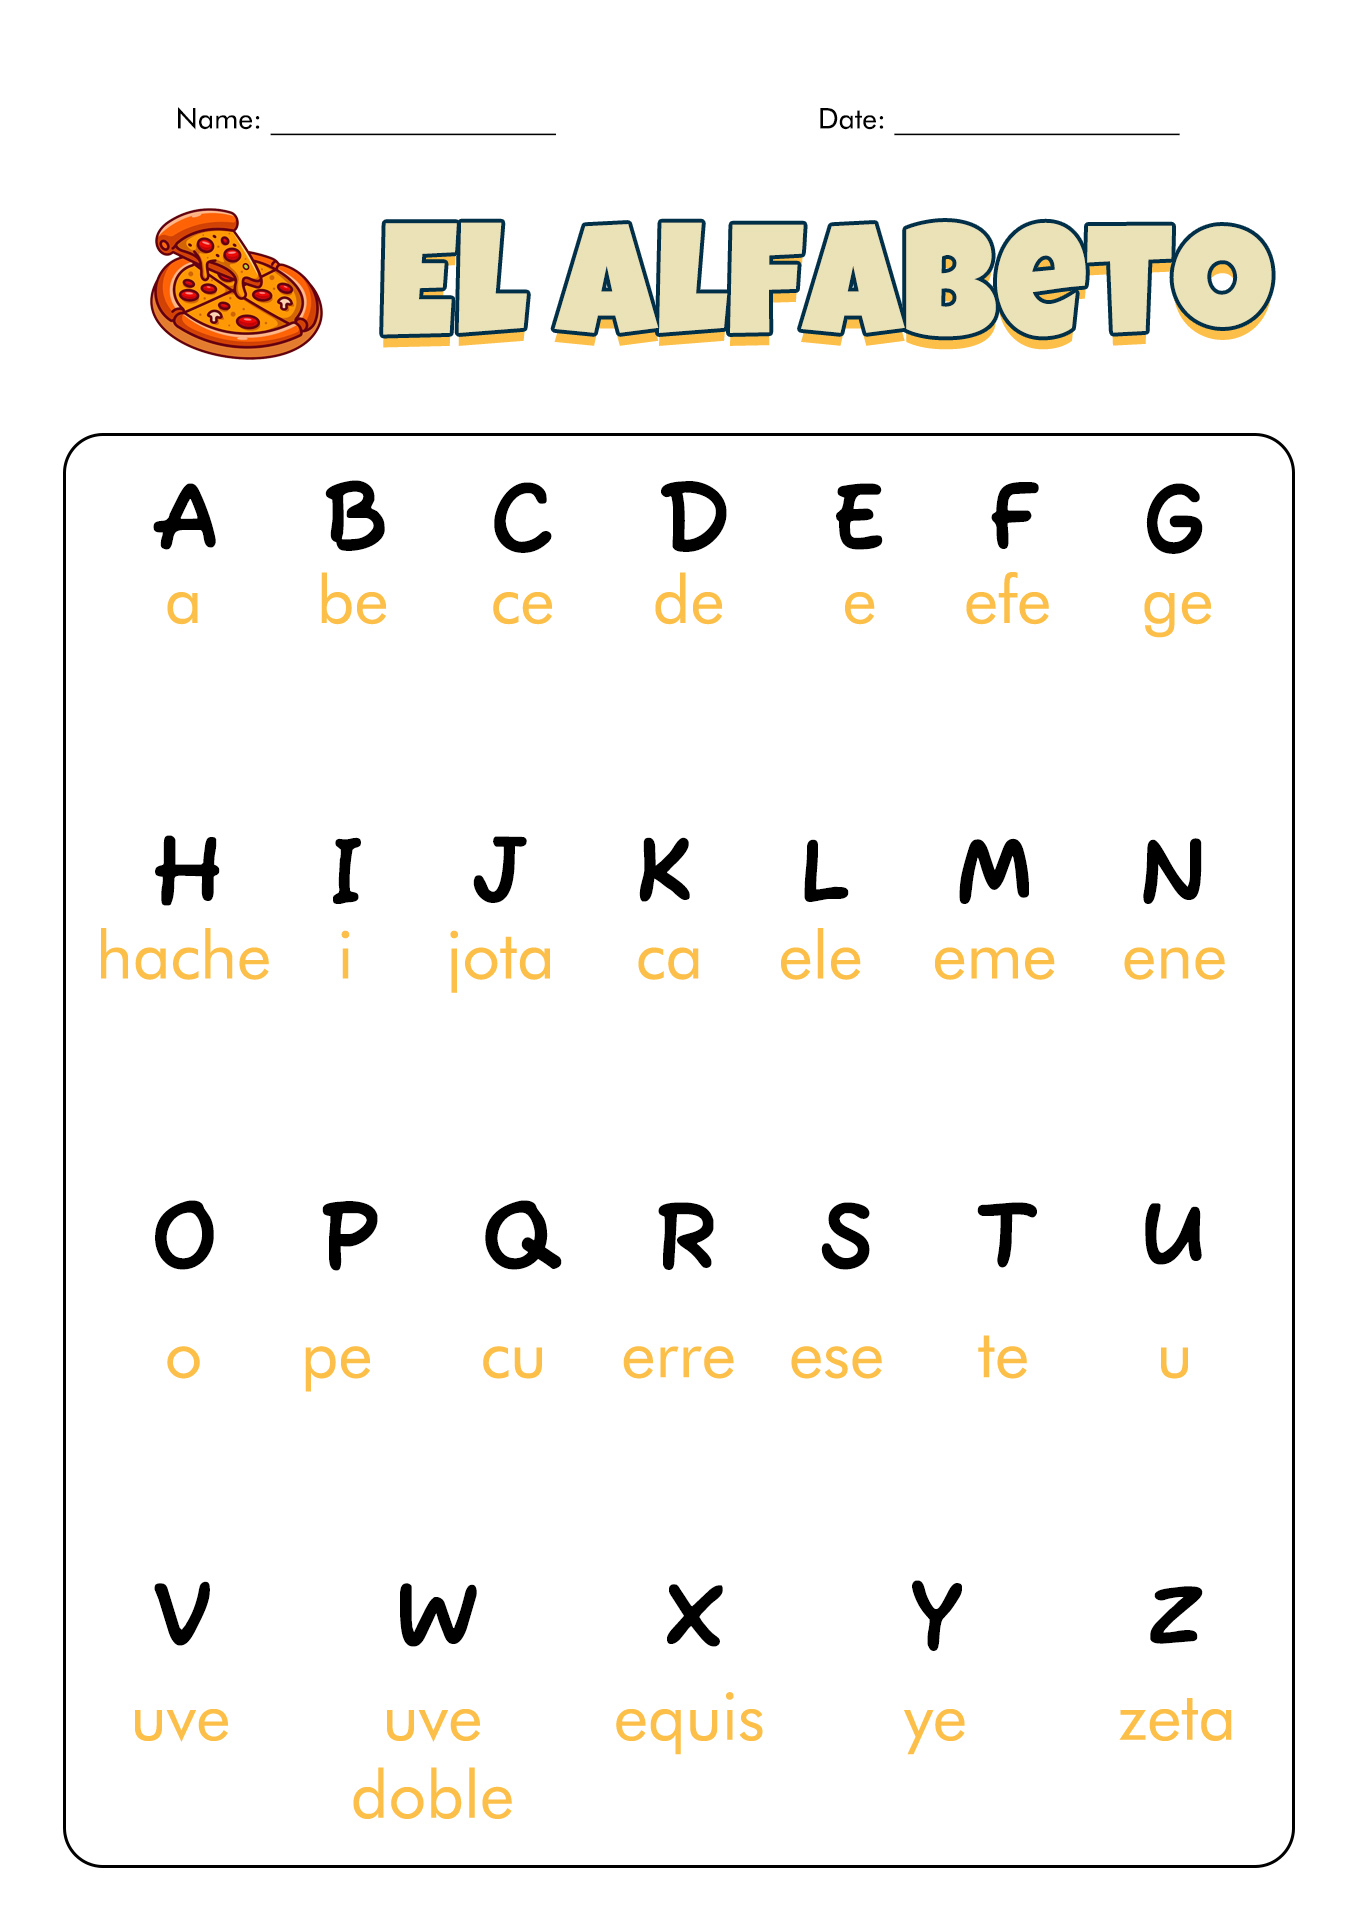 Spanish Alphabet Letter Names